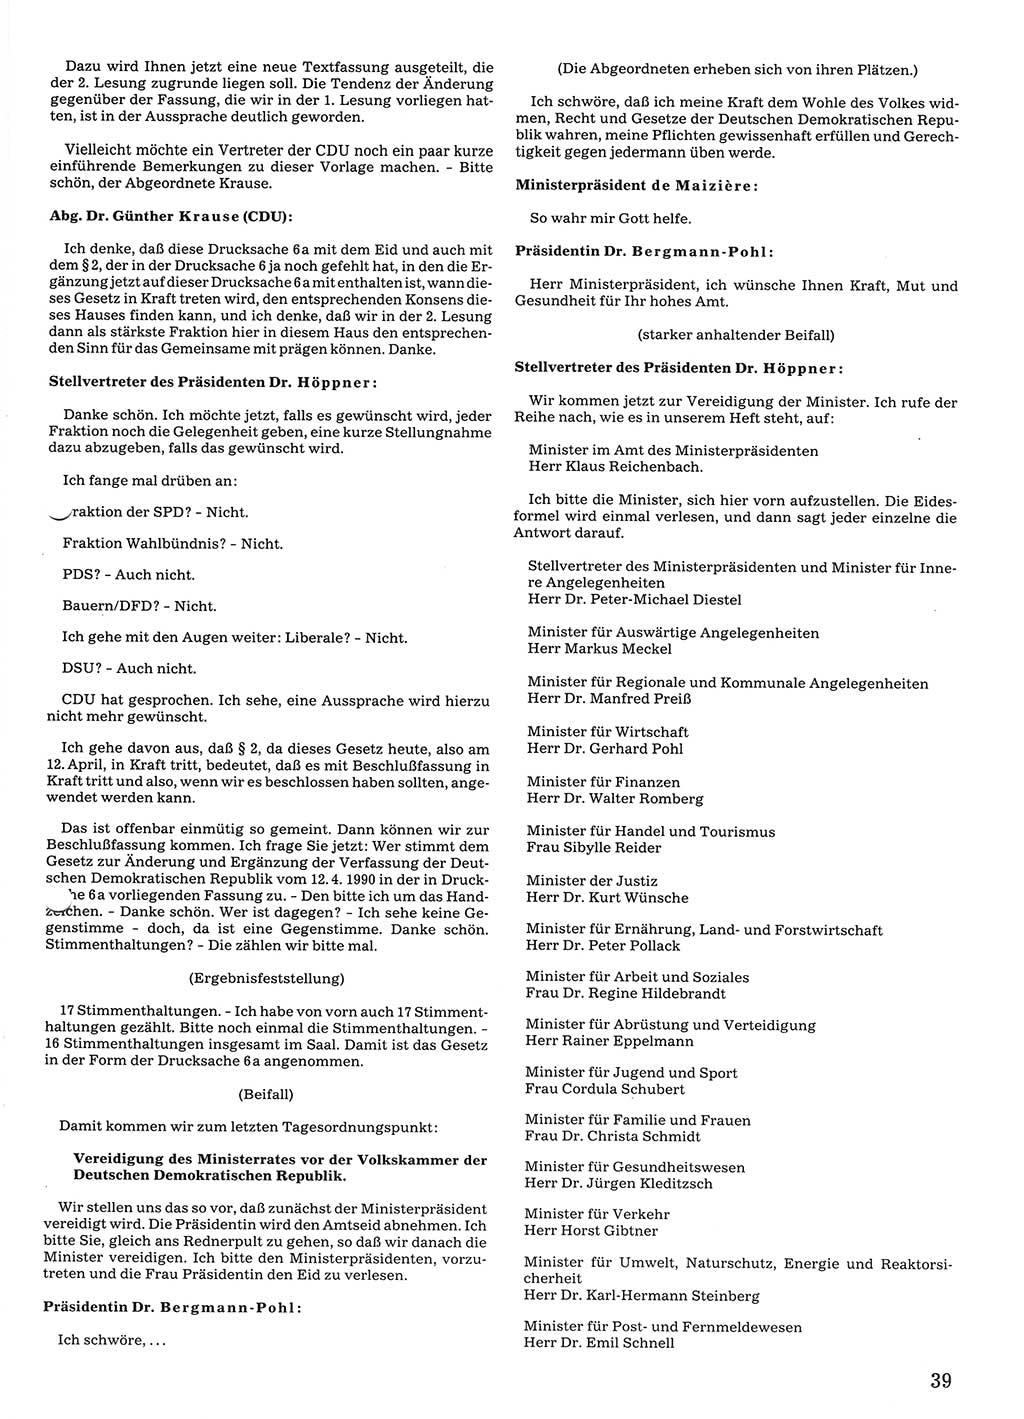 Tagungen der Volkskammer (VK) der Deutschen Demokratischen Republik (DDR), 10. Wahlperiode 1990, Seite 39 (VK. DDR 10. WP. 1990, Prot. Tg. 1-38, 5.4.-2.10.1990, S. 39)